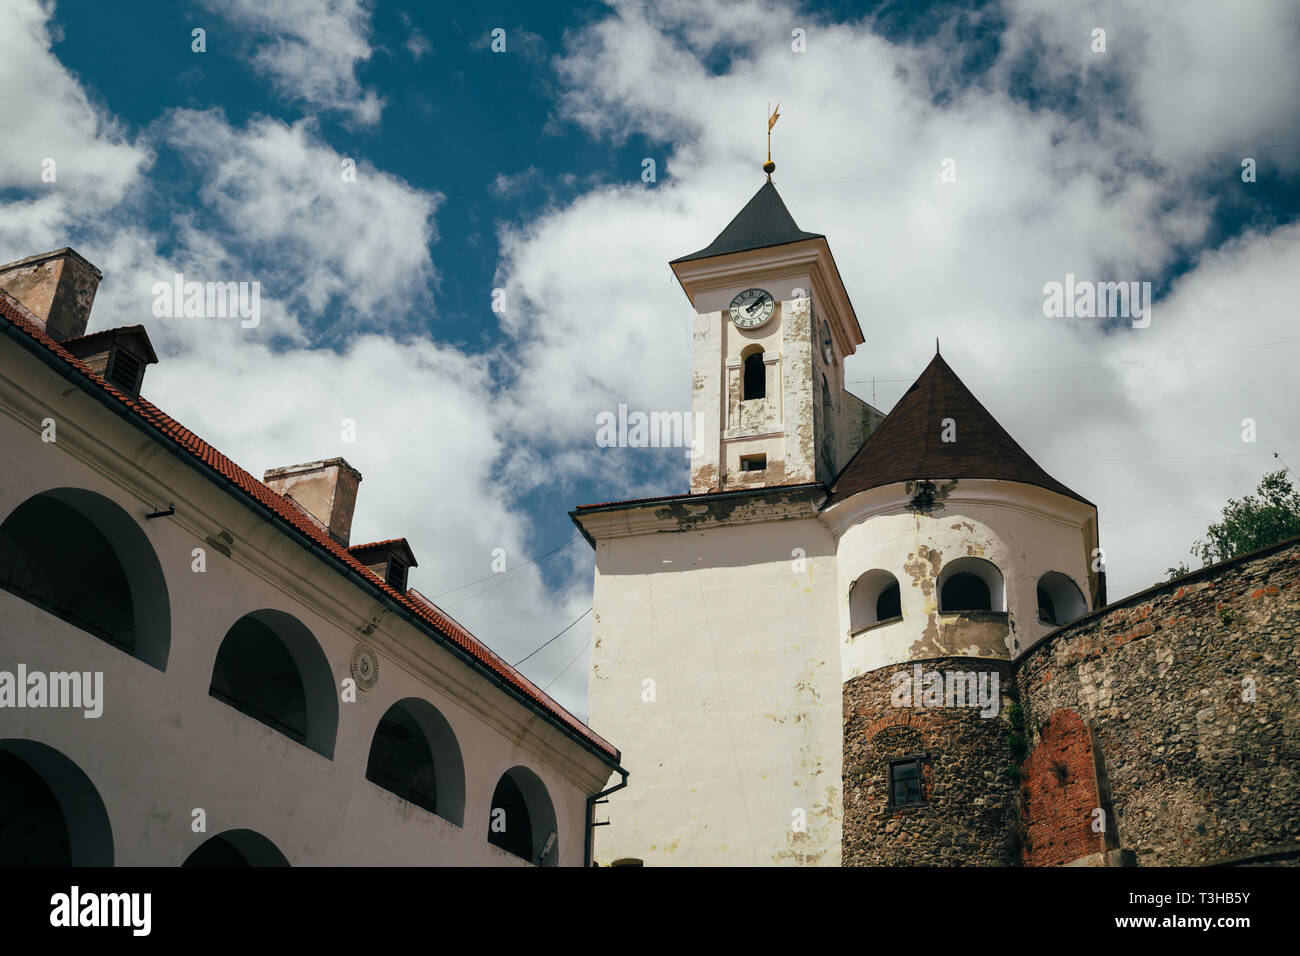 Die palanok Schloss oder Mukachevo Schloss, in der Nähe des Clock Tower. Tschechien, Ukraine Stockfoto